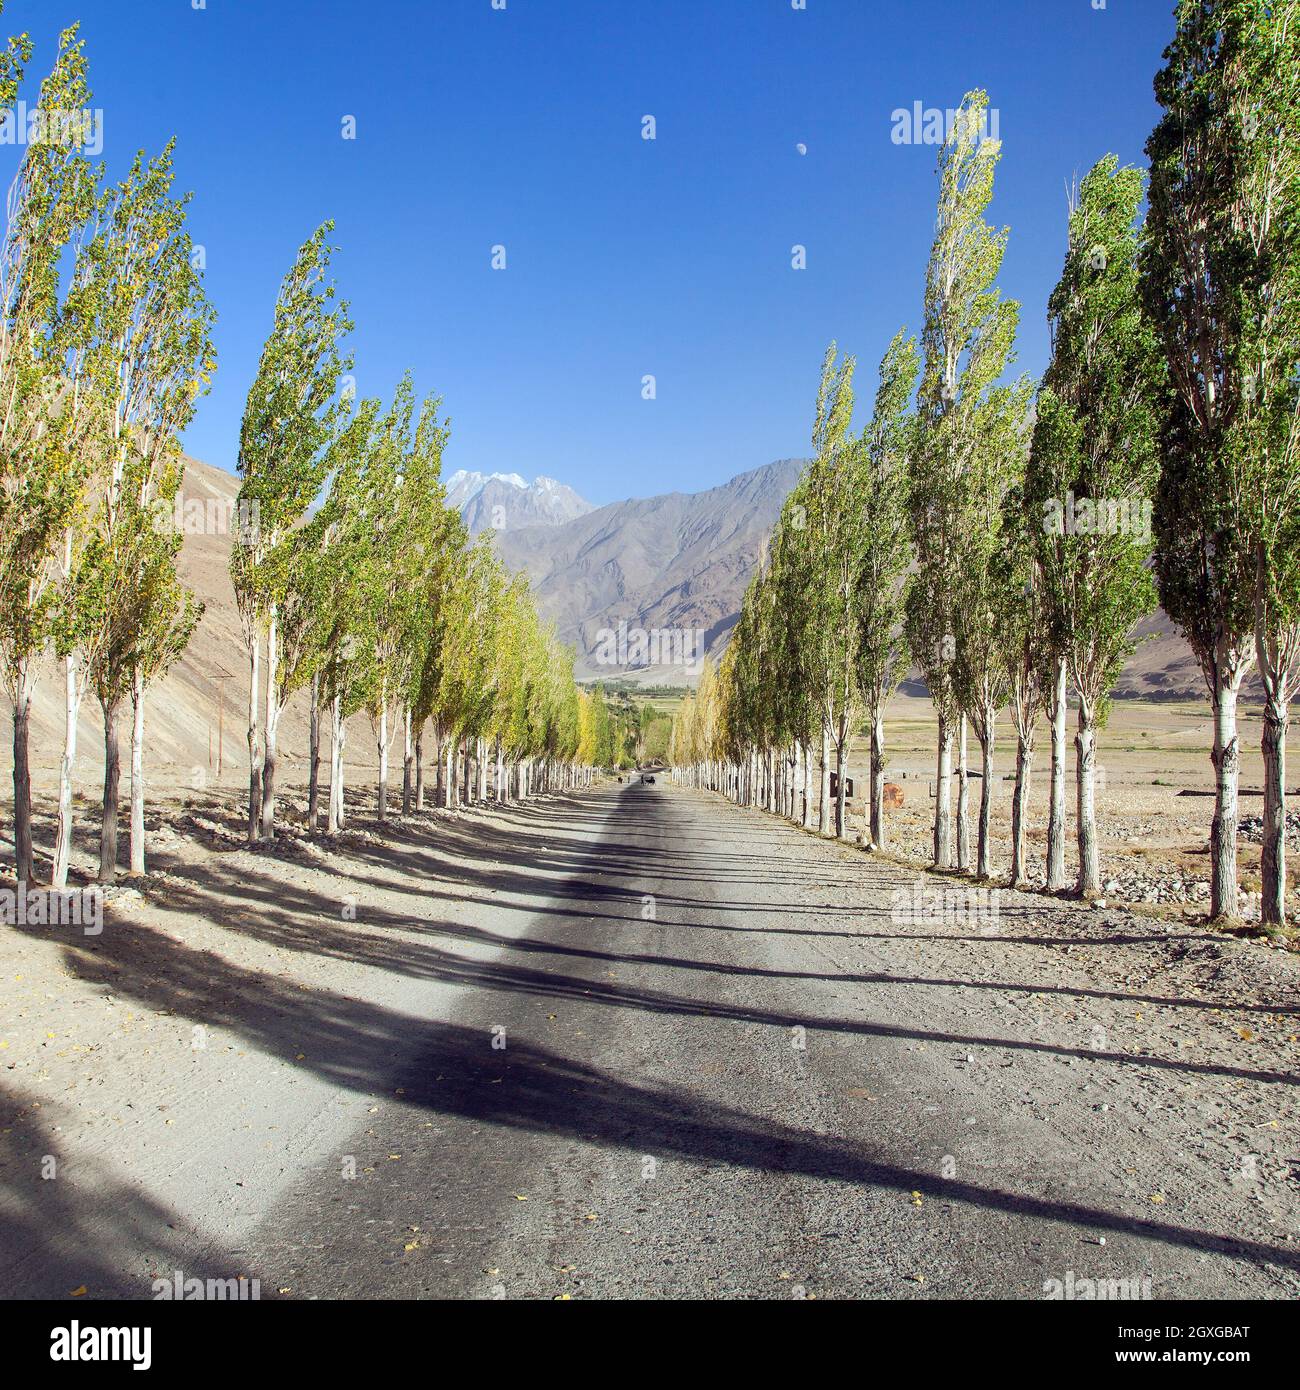 Pamir strada, strada e vicolo di alberi di pioppo e Pamir montagne, Wakhan corridoio e valle, Gorno-Badakhshan regione, Tagikistan Foto Stock